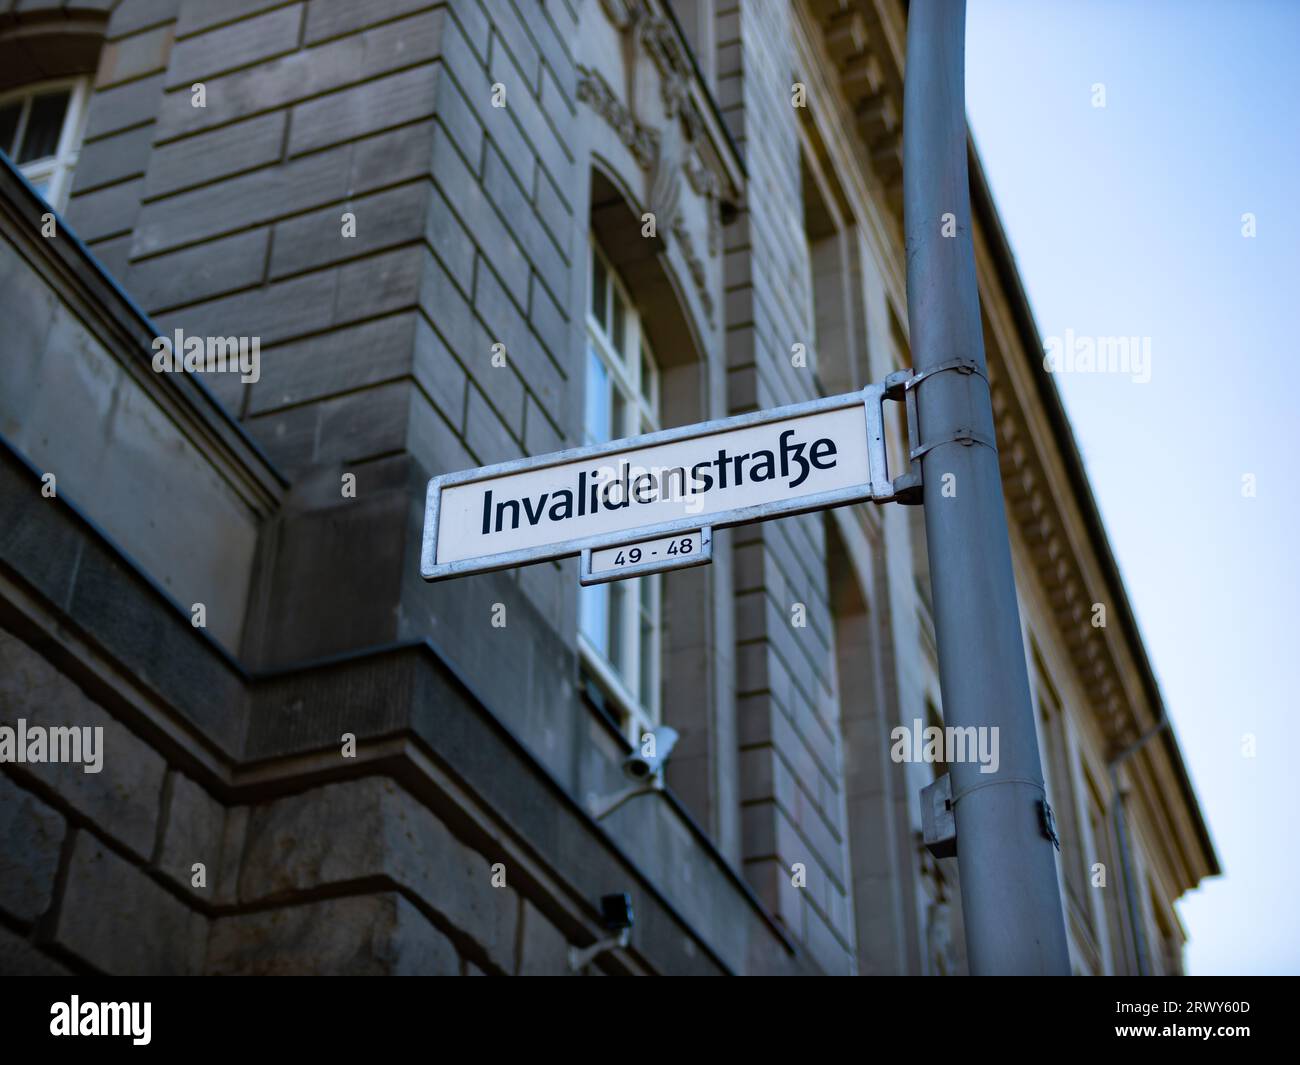 Cartello con il nome della strada Invalidenstrasse a Berlin Mitte. La guida mostra la posizione e la direzione della strada. Foto Stock